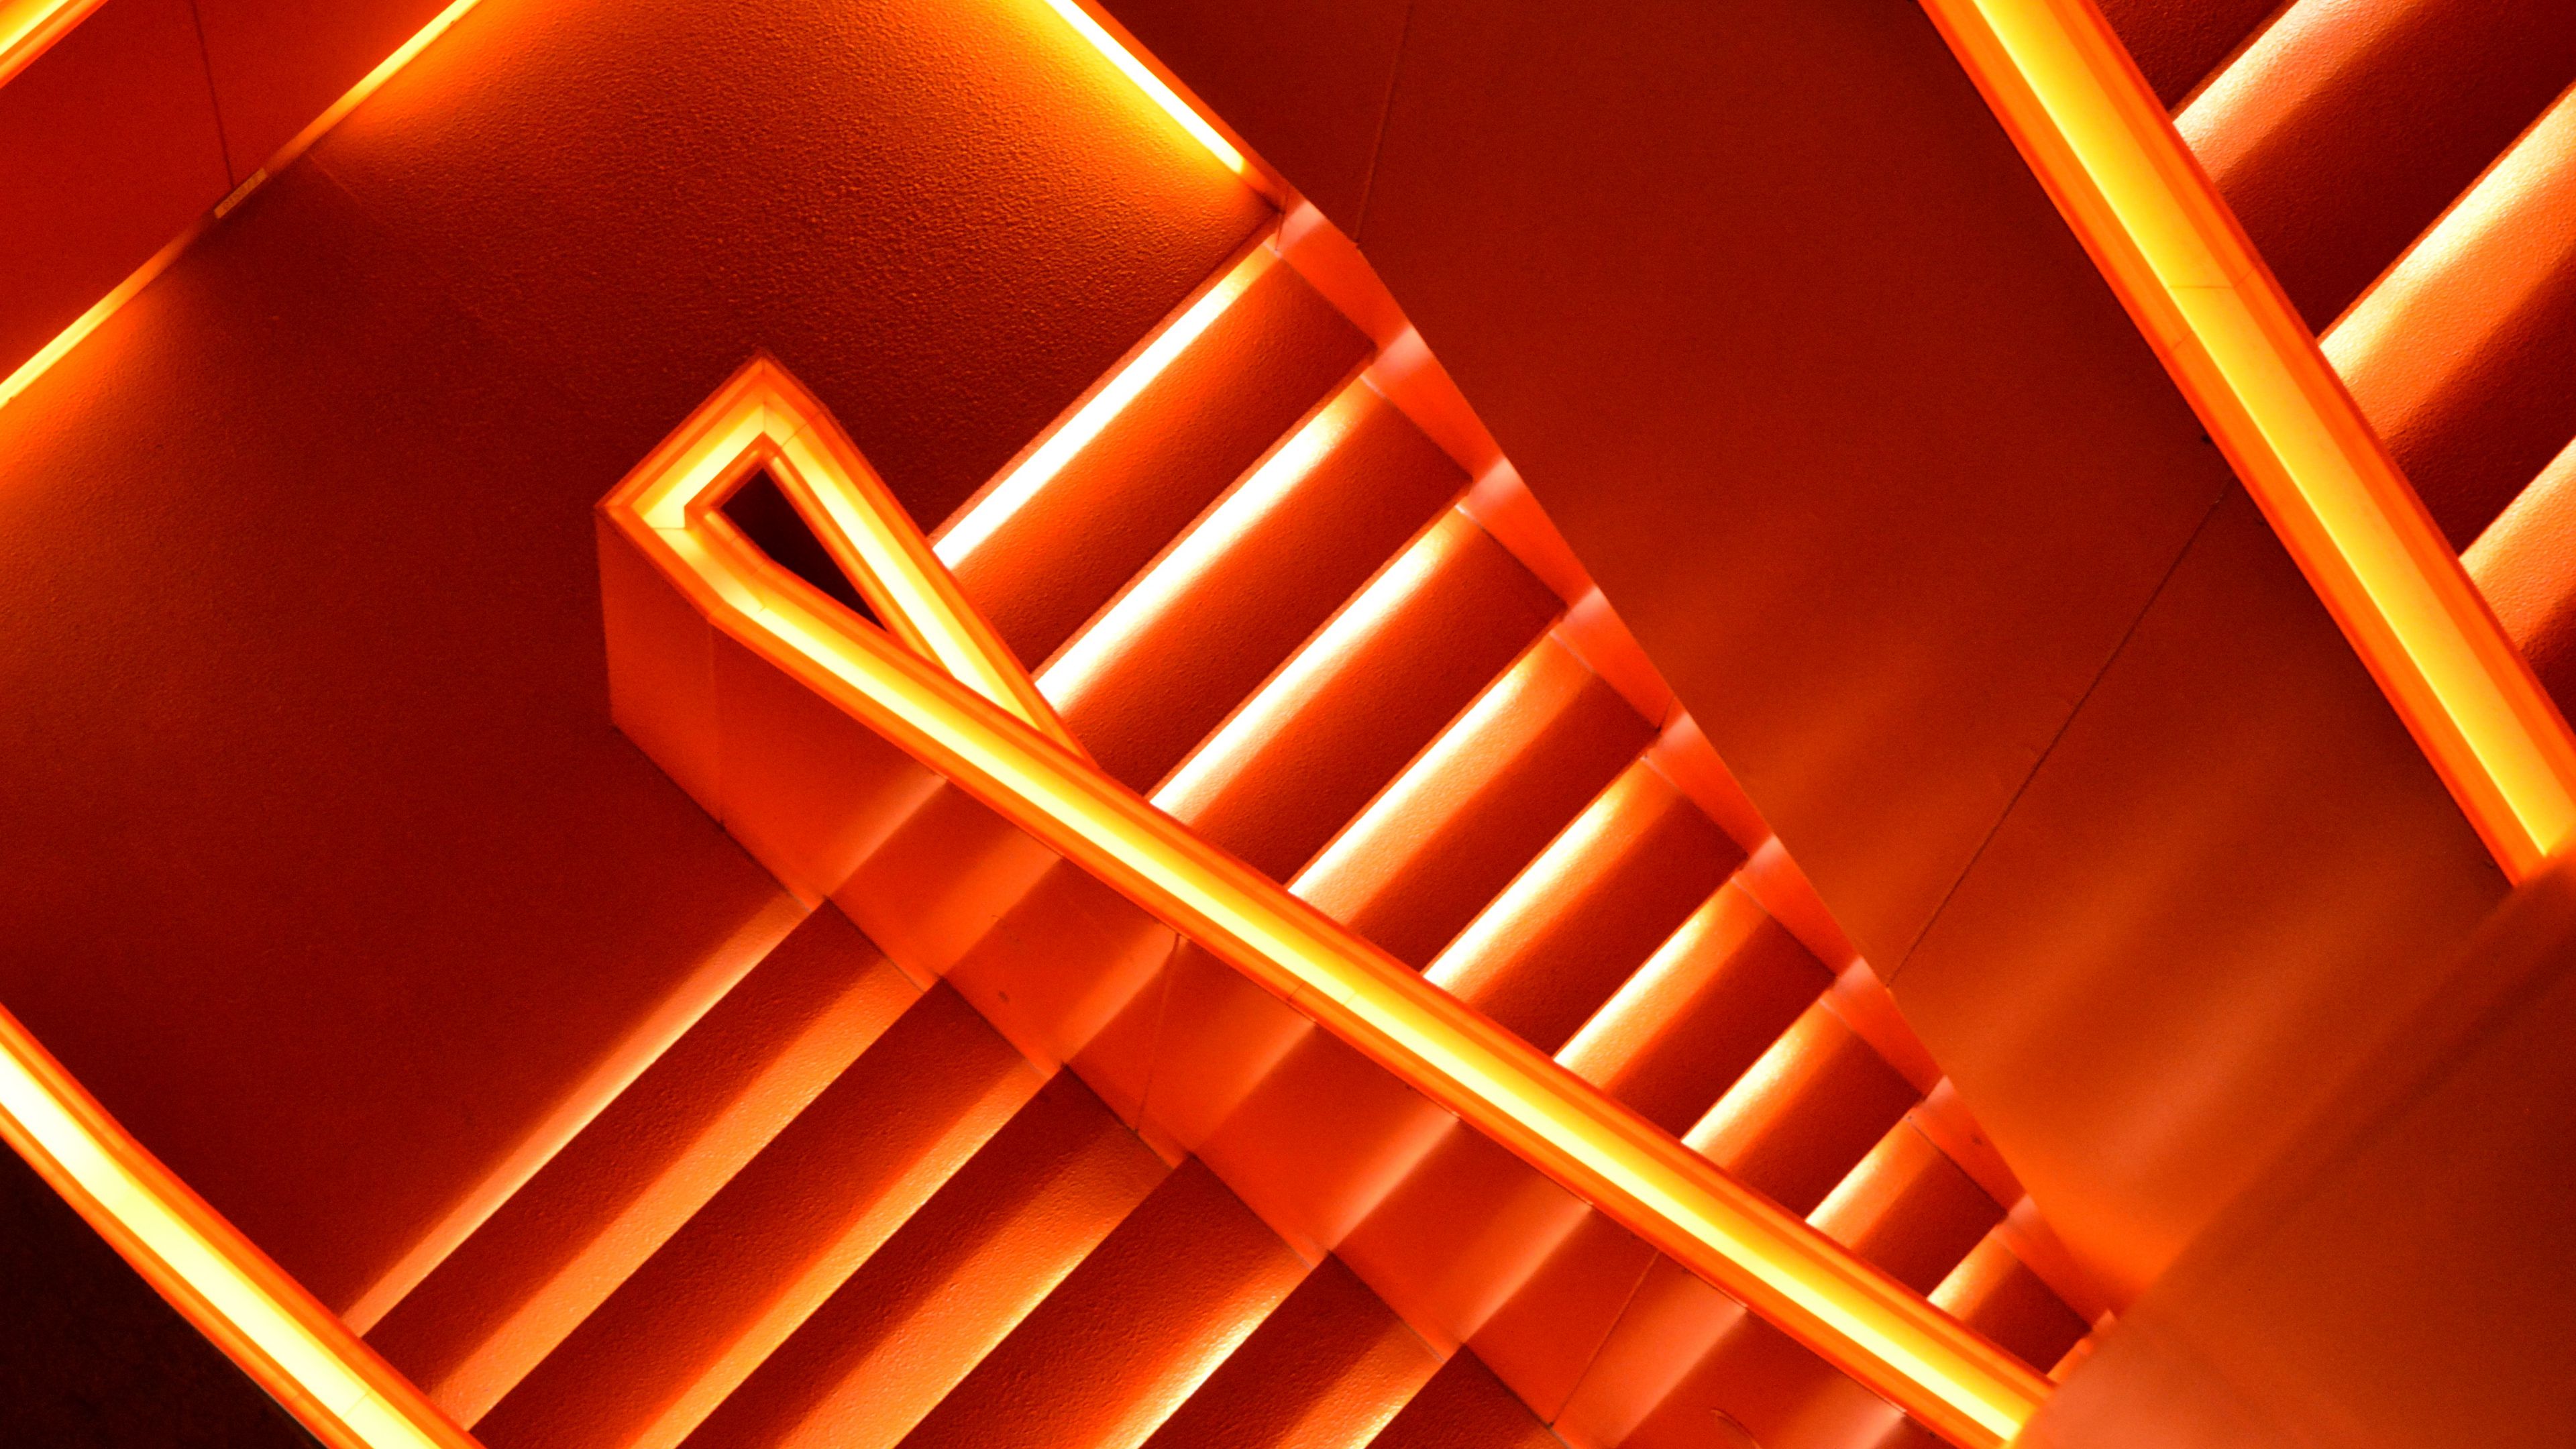 An orange neon light illuminates a flight of stairs. - Neon orange